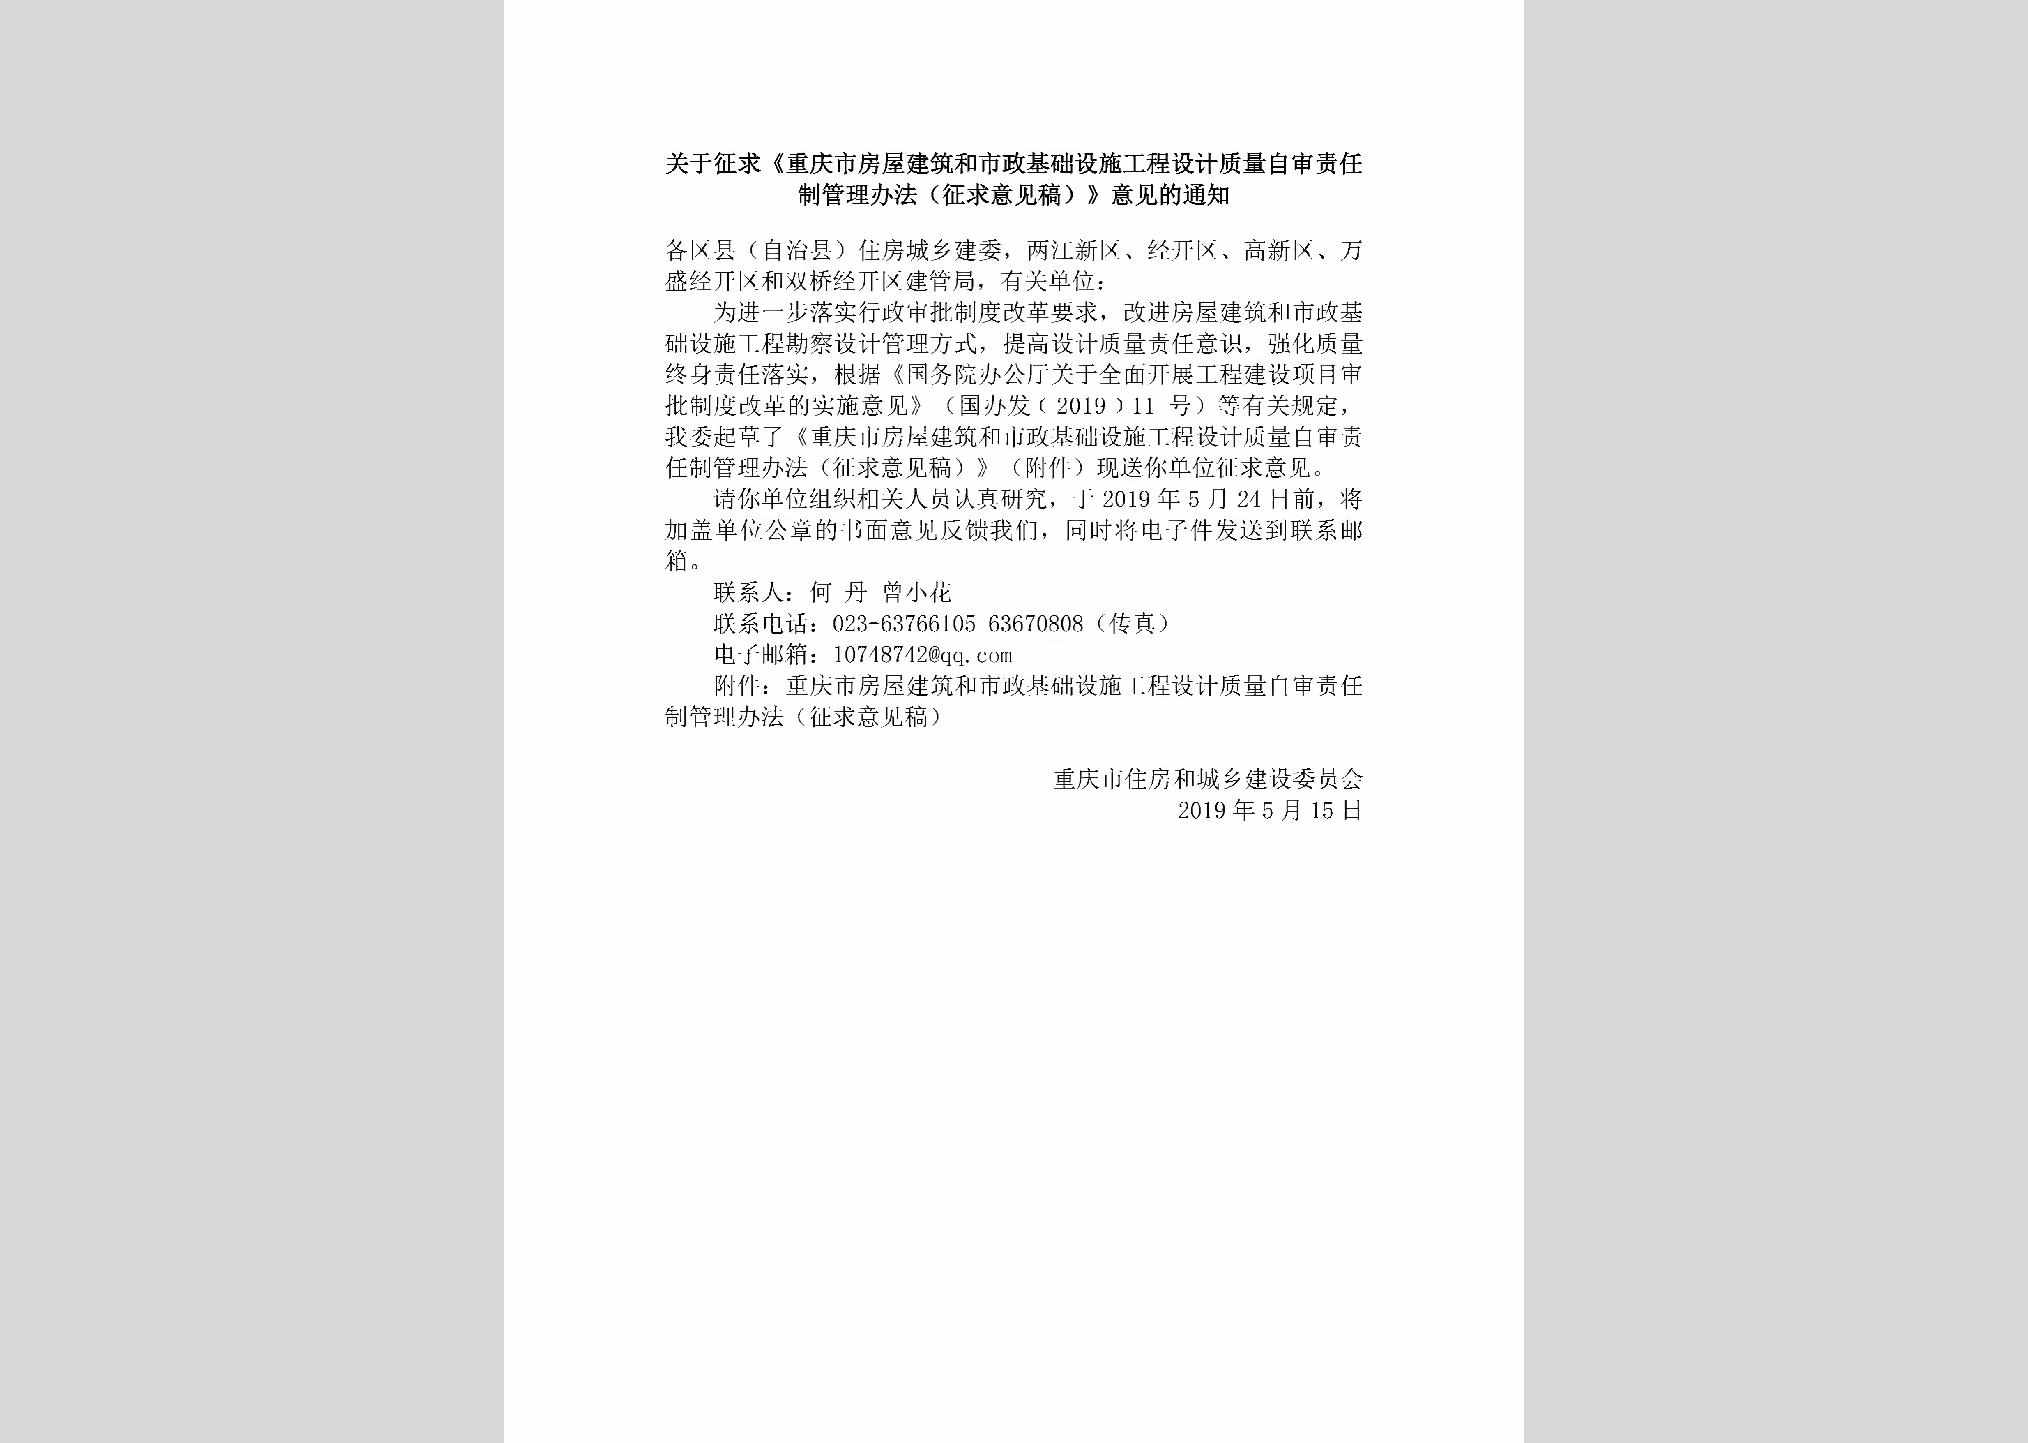 CQ-FWJZSZJC-2019：关于征求《重庆市房屋建筑和市政基础设施工程设计质量自审责任制管理办法（征求意见稿）》意见的通知